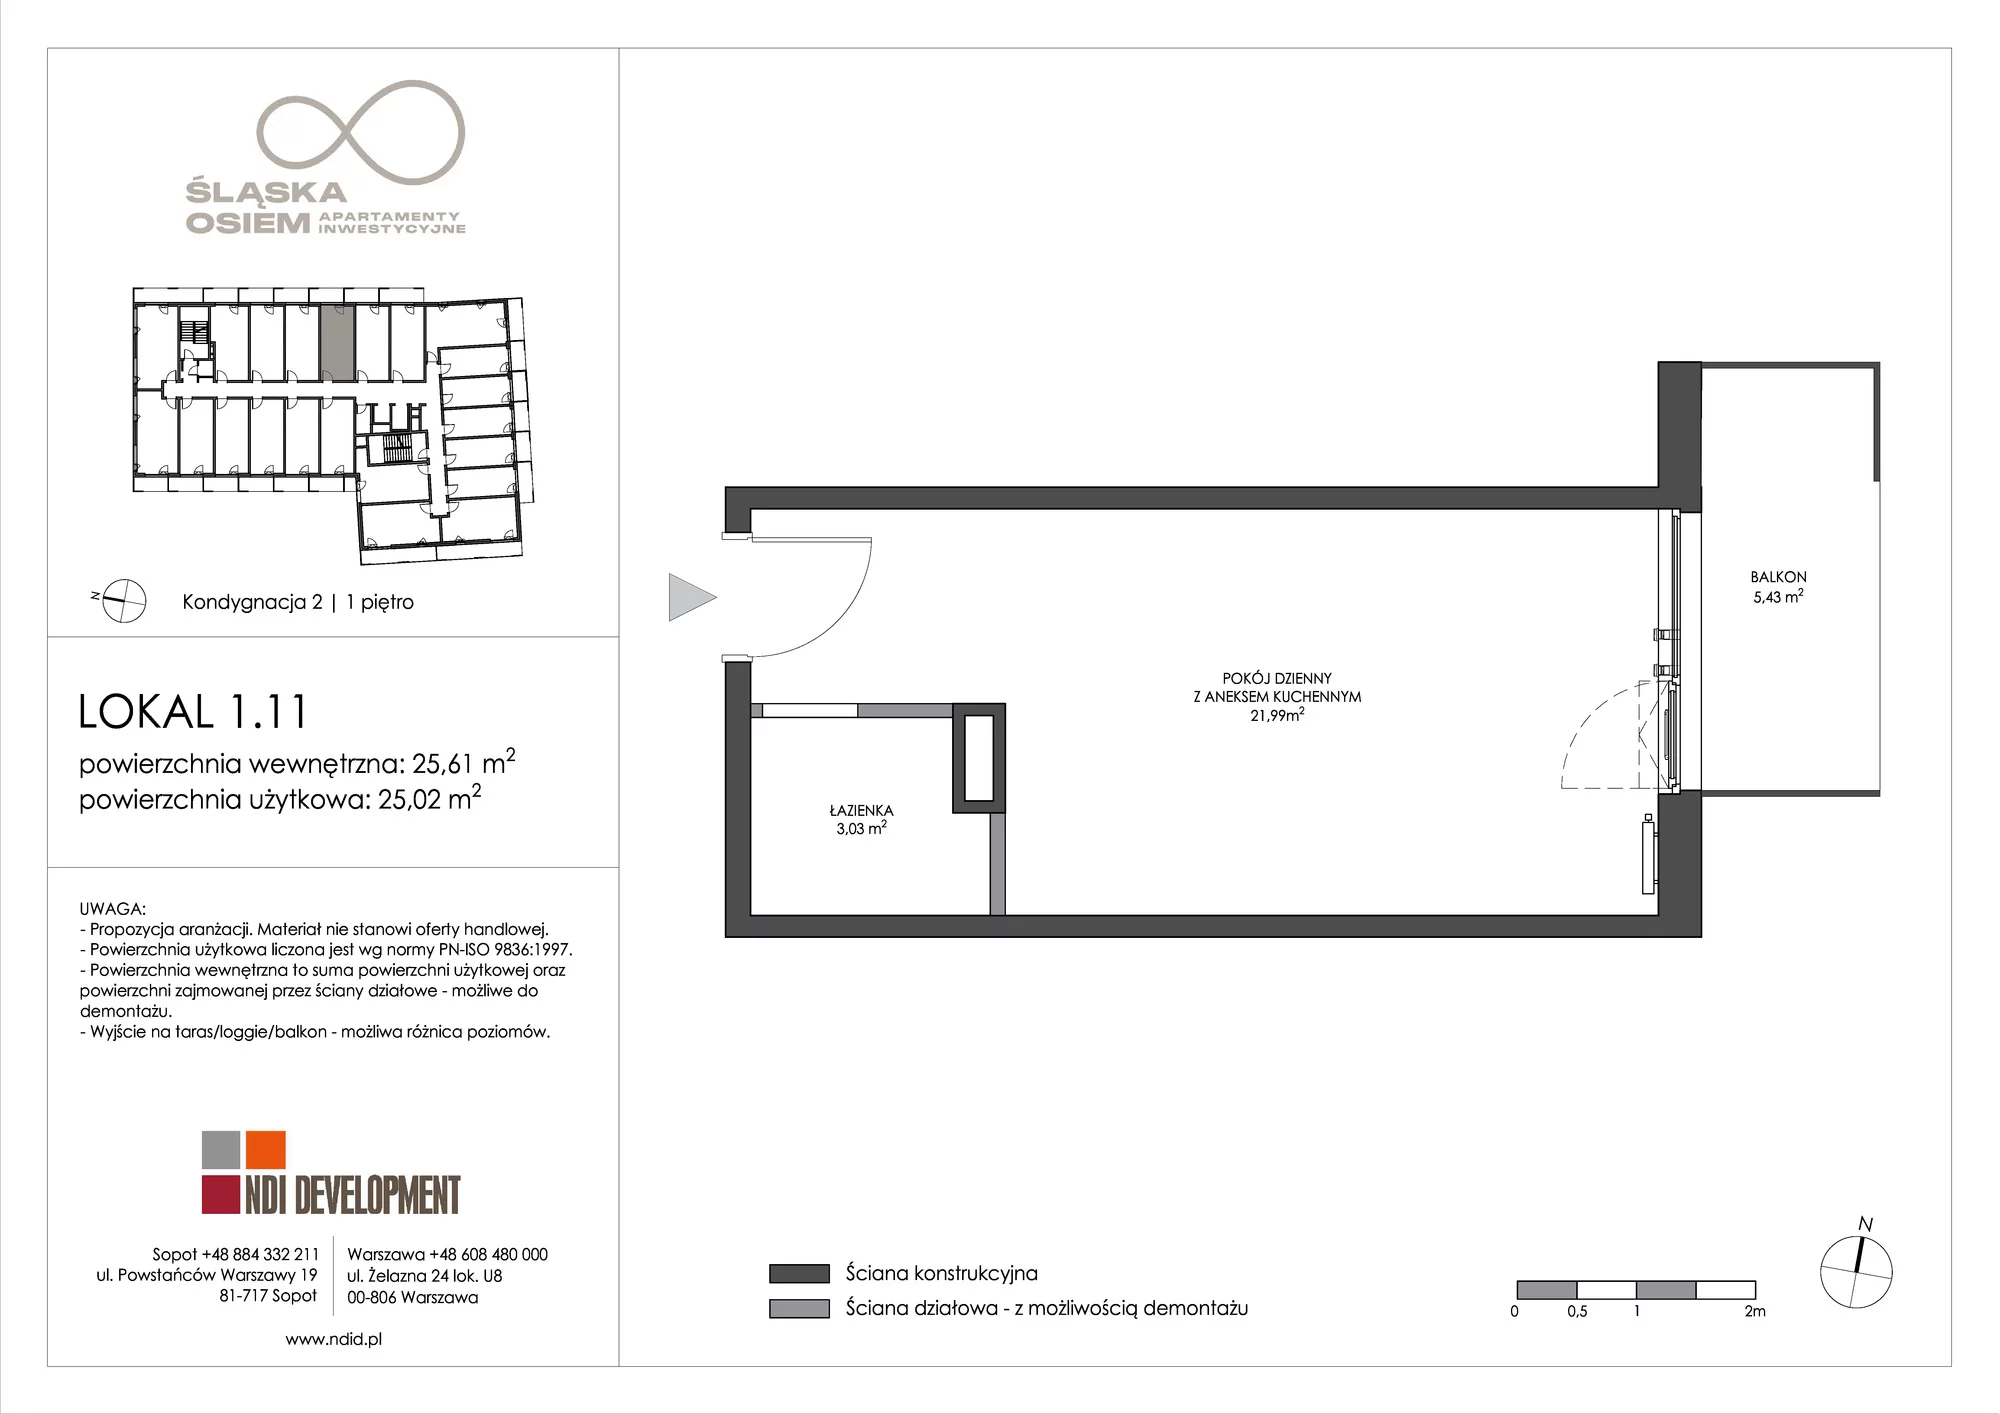 Apartament inwestycyjny 25,61 m², piętro 1, oferta nr 1.11, Śląska Osiem, Gdańsk, Przymorze, ul. Śląska 8